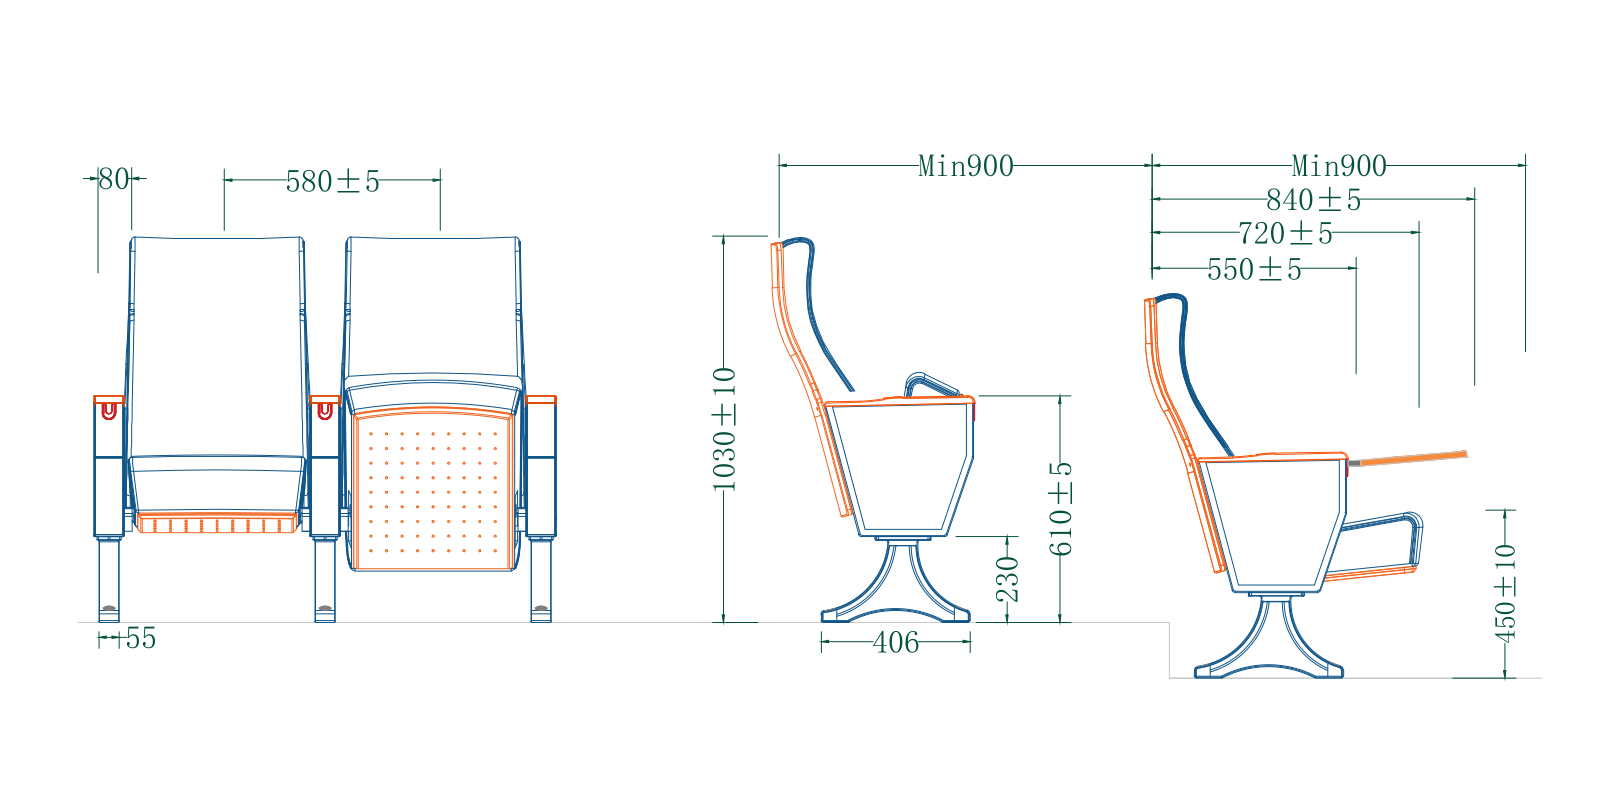 Mejore el ambiente de su lugar con soluciones de asientos de auditorio de calidad de fabricantes de renombre1